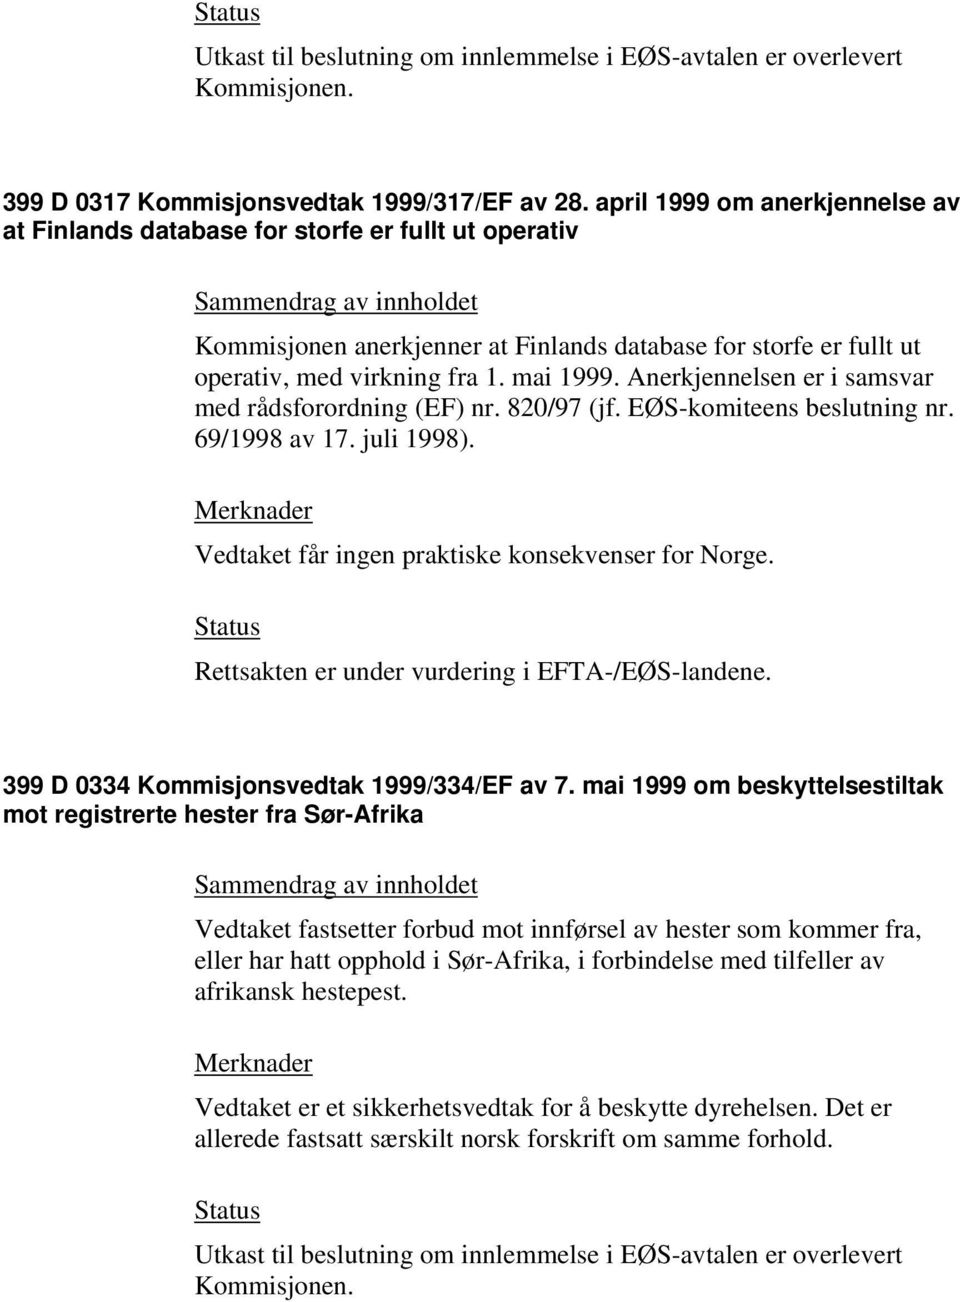 Anerkjennelsen er i samsvar med rådsforordning (EF) nr. 820/97 (jf. EØS-komiteens beslutning nr. 69/1998 av 17. juli 1998). Vedtaket får ingen praktiske konsekvenser for Norge.